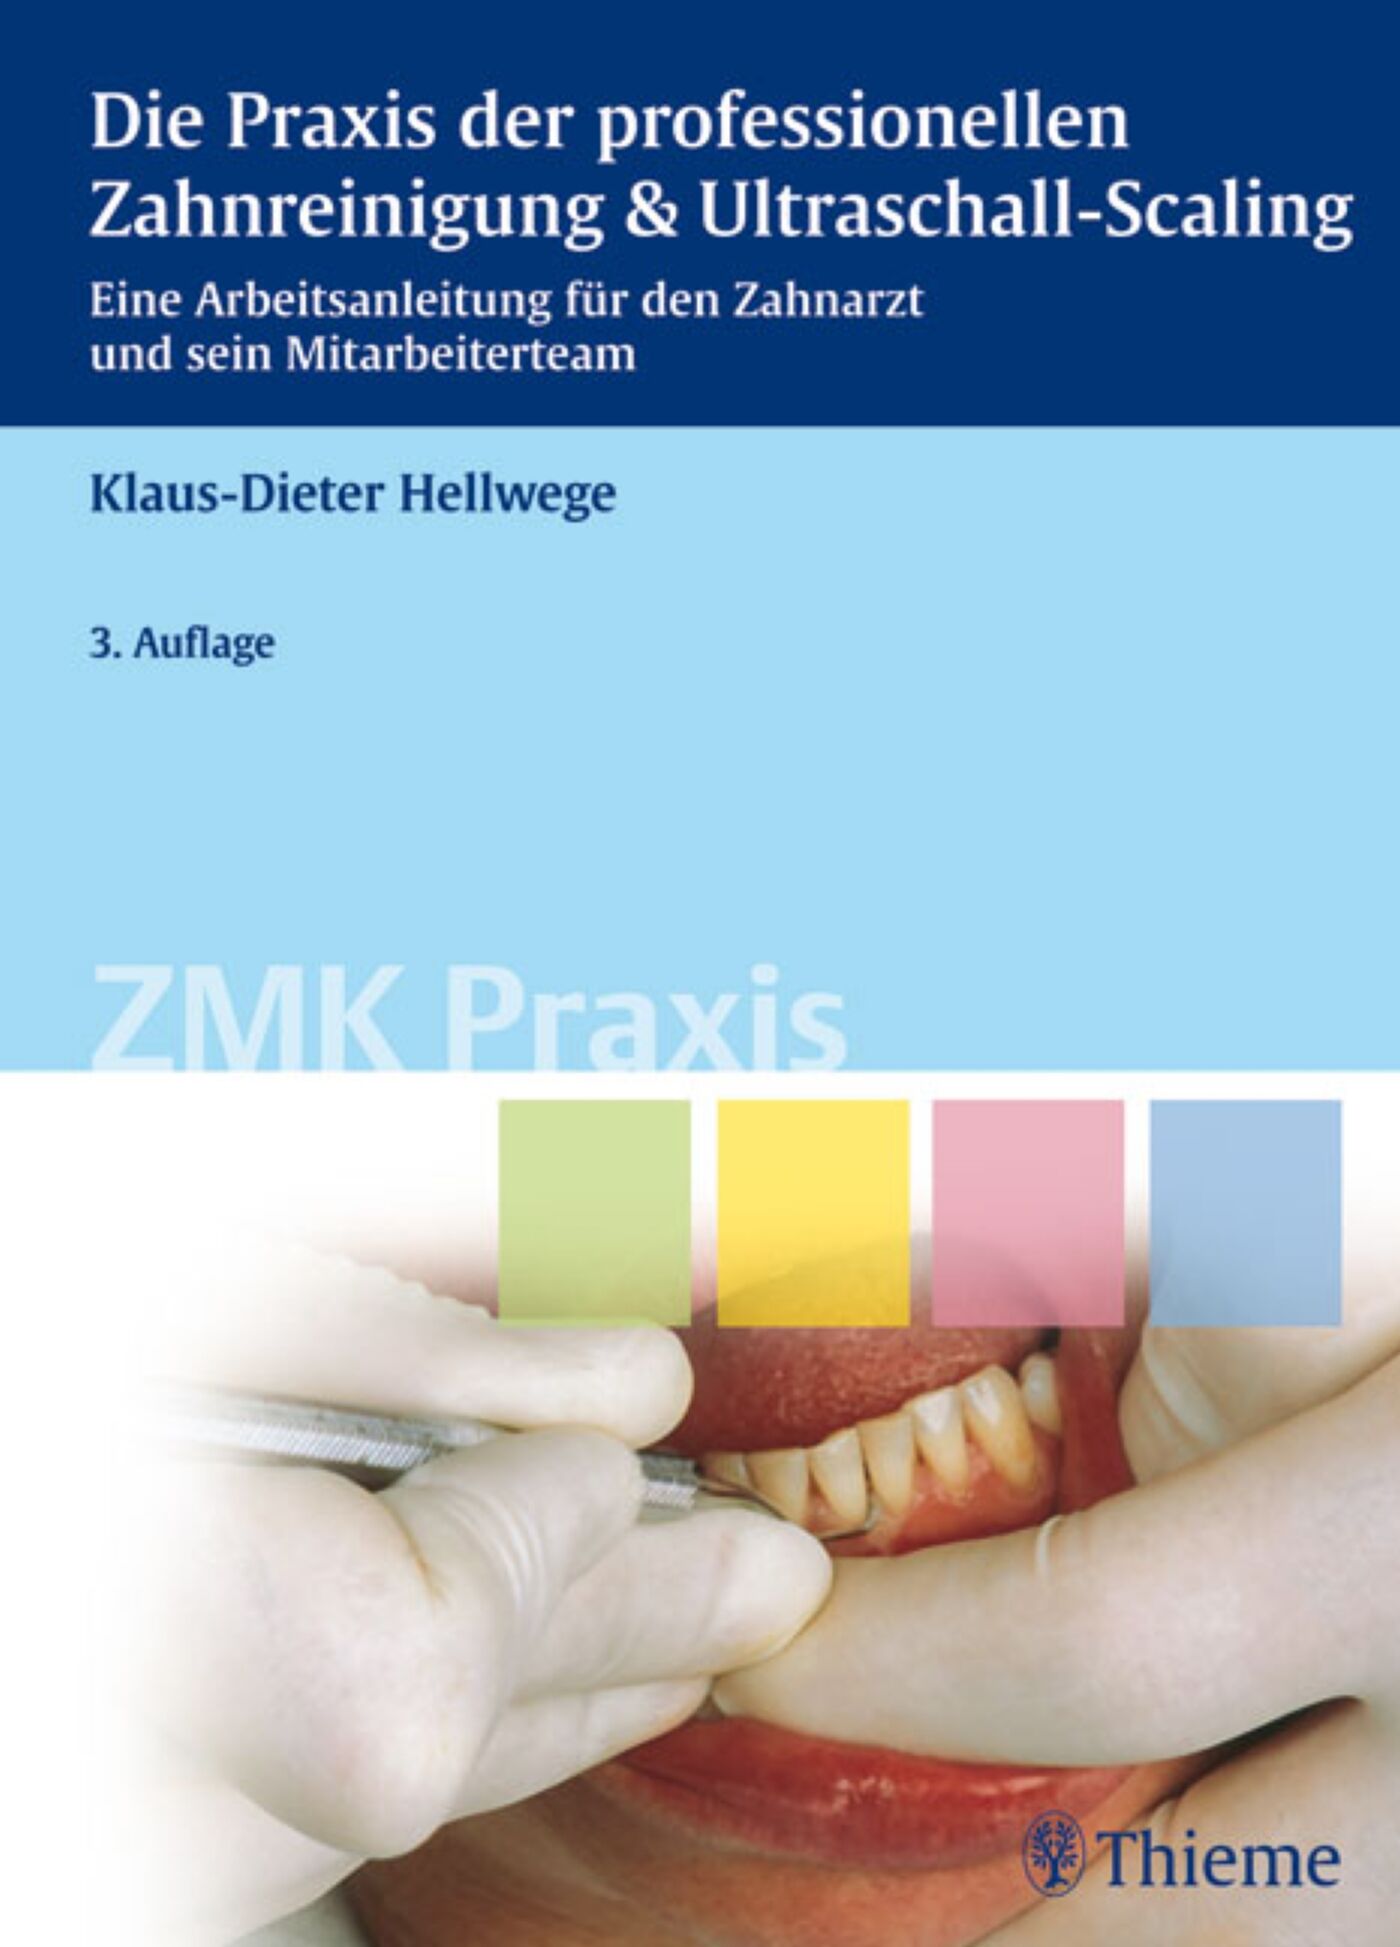 Die Praxis der professionellen Zahnreinigung & Ultraschall-Scaling, 9783131563330